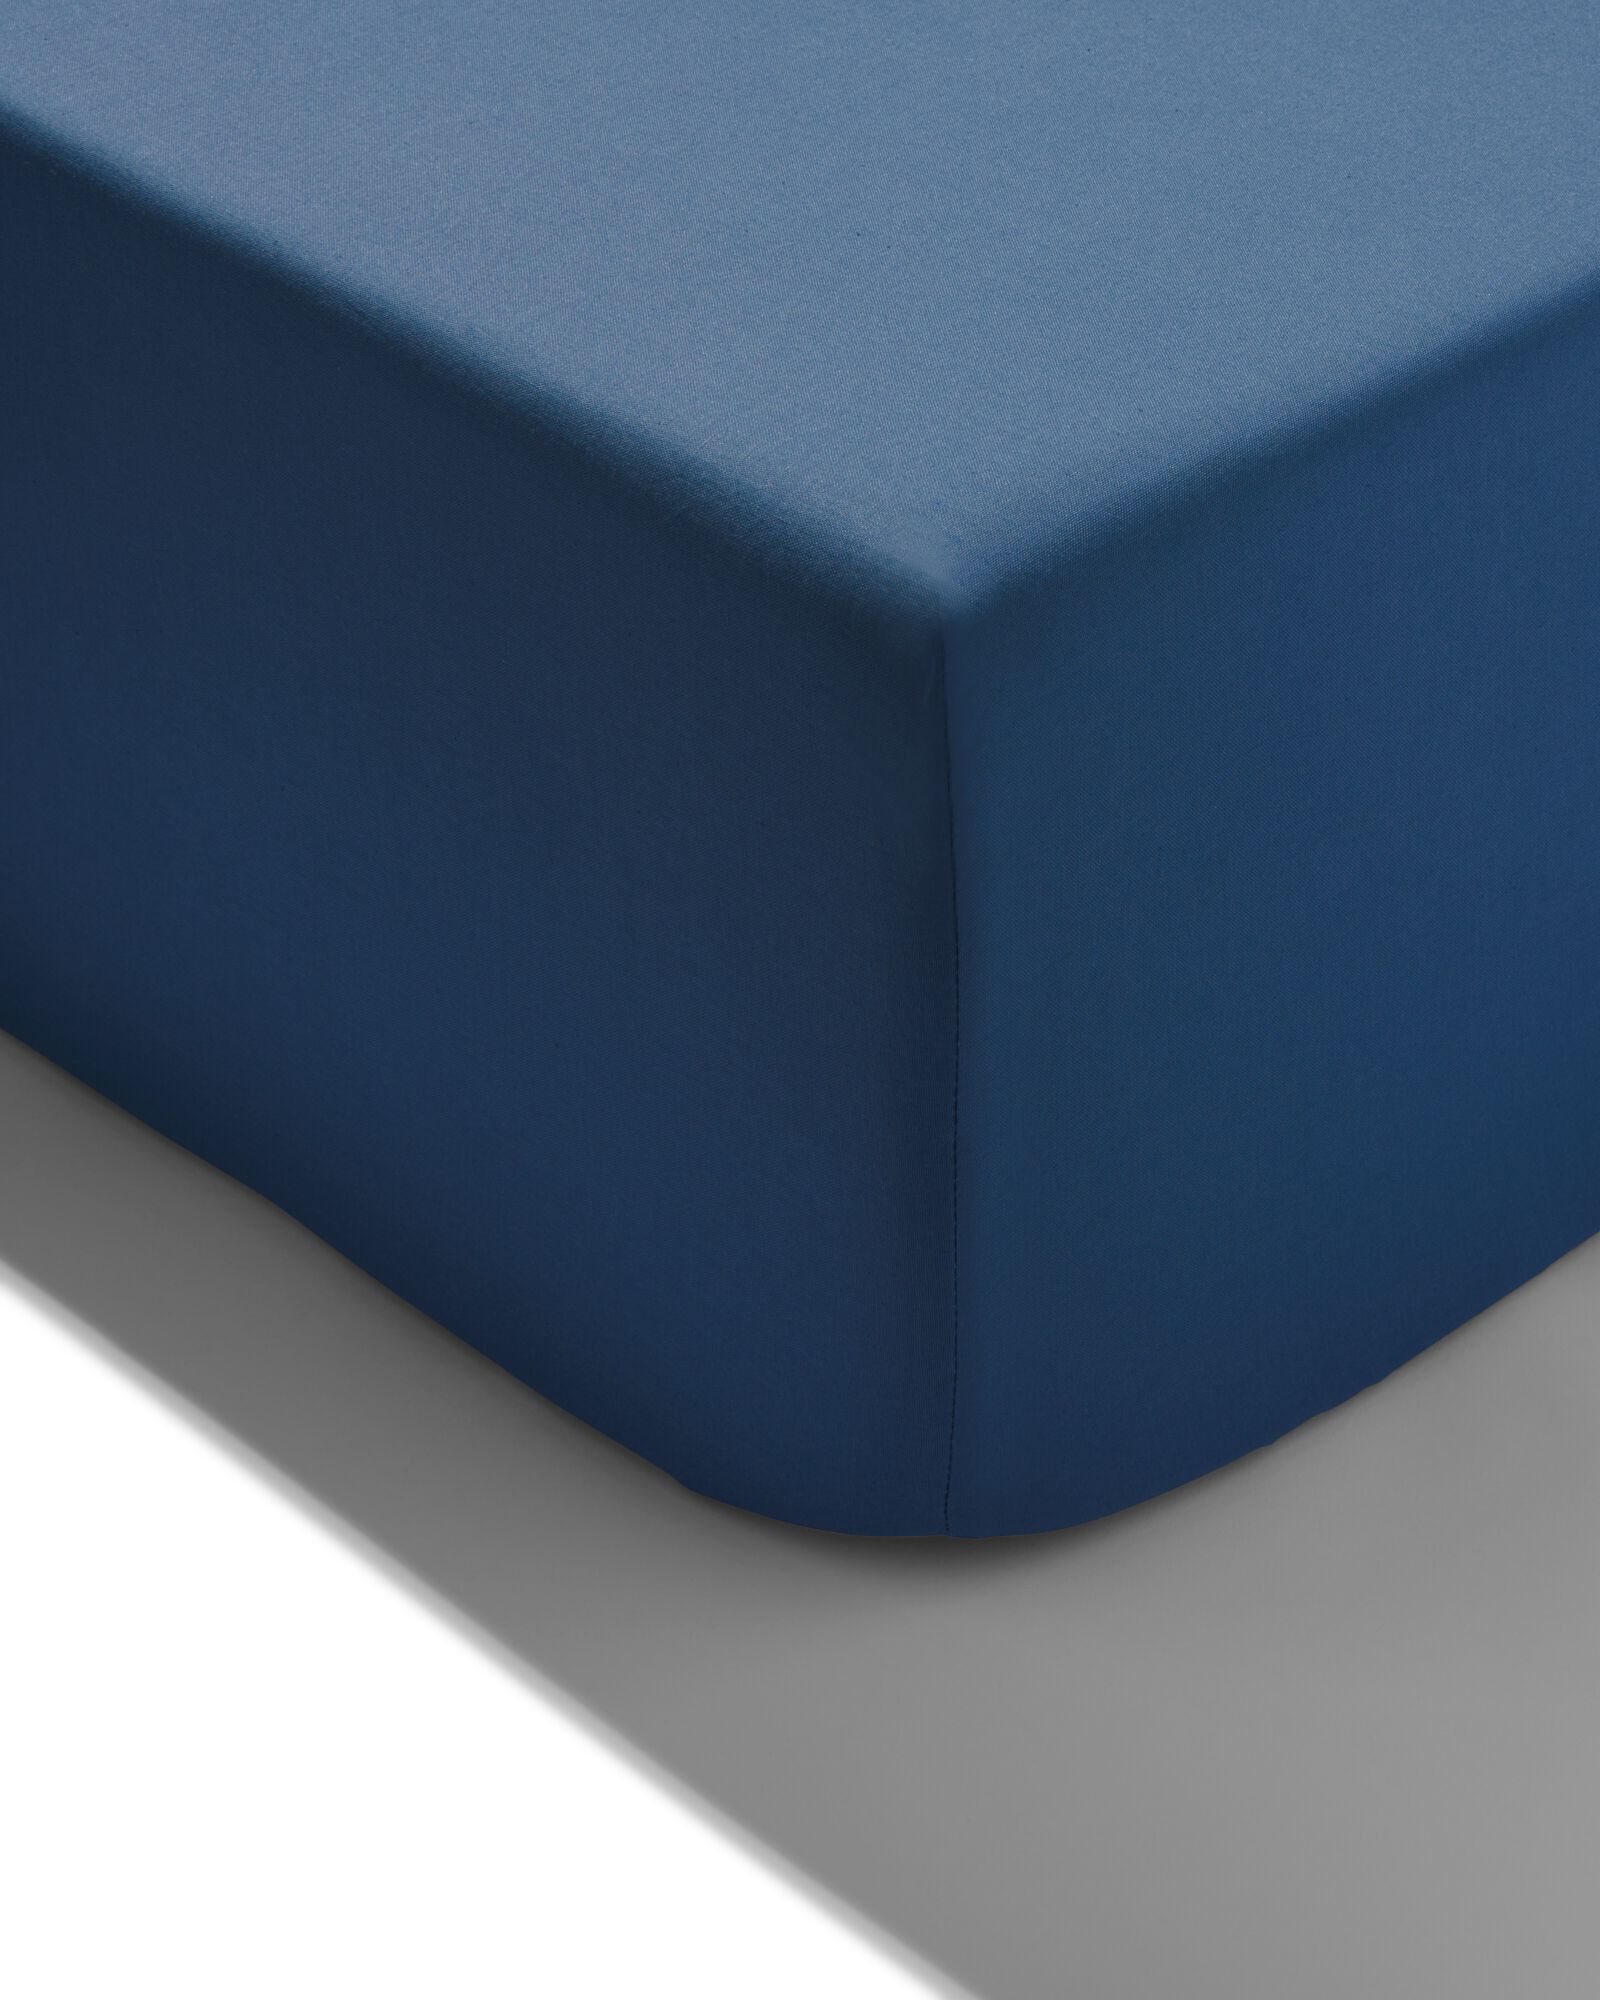 Spannbettlaken, Soft Cotton, 180 x 200 cm, blau - 5190053 - HEMA